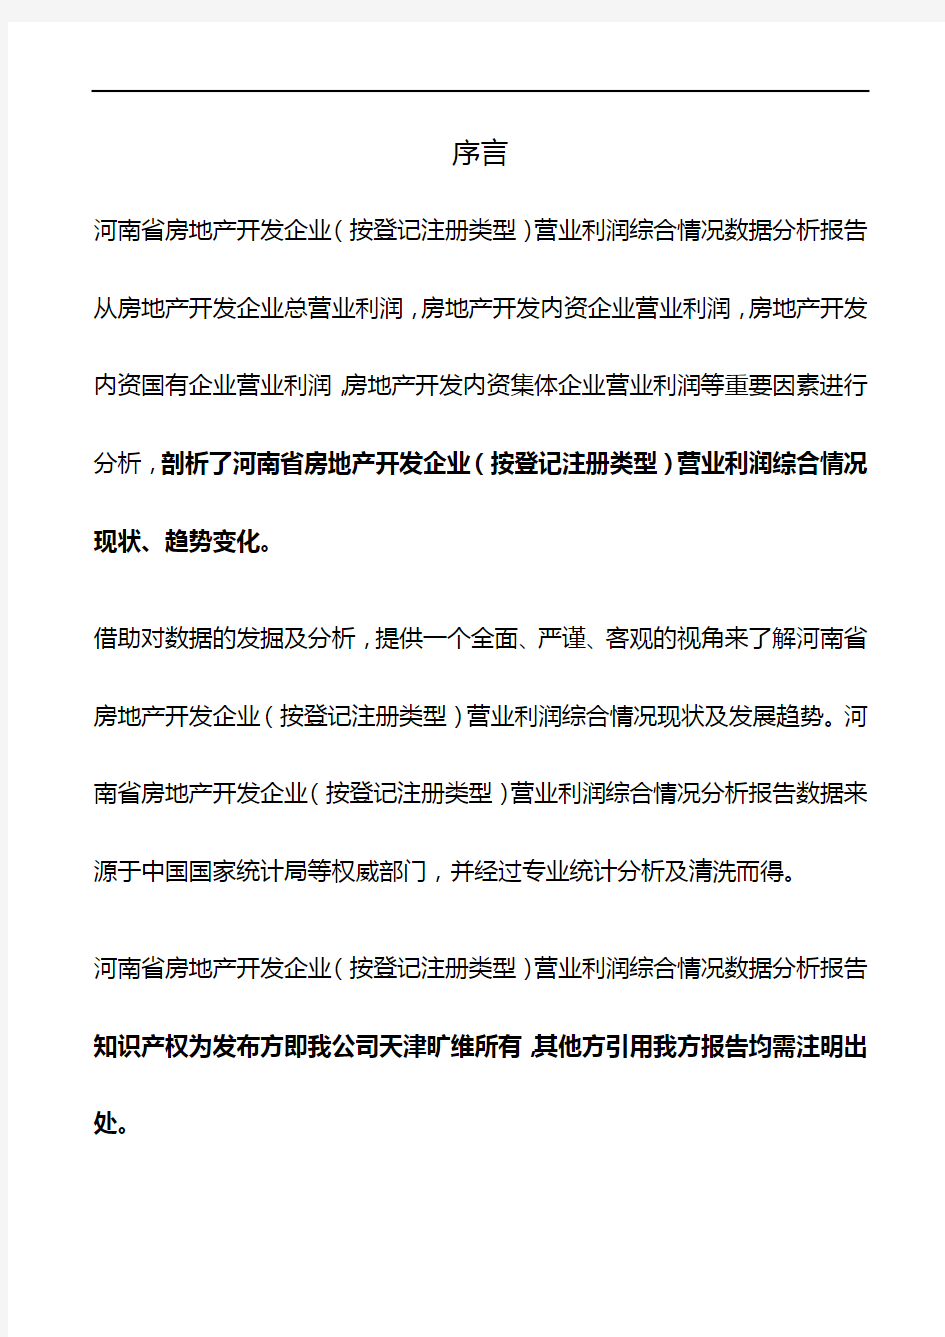 河南省房地产开发企业(按登记注册类型)营业利润综合情况3年数据分析报告2019版